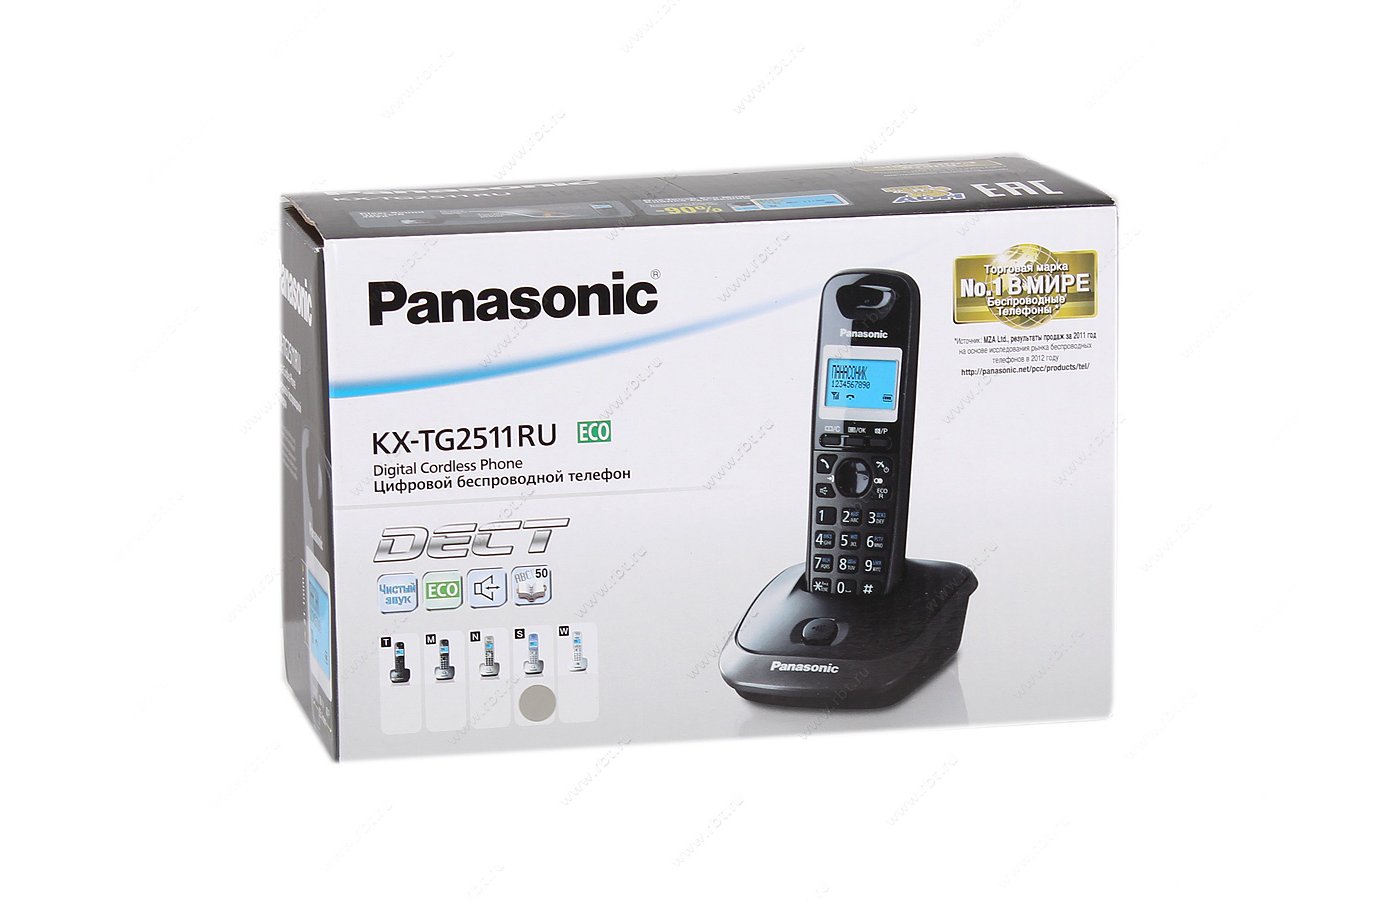 Panasonic kx tg2511rum. Panasonic KX-tg2511ru. Panasonic KX-tg2511ru Eco. KX-tg2511uam Digital Cordless Phone.